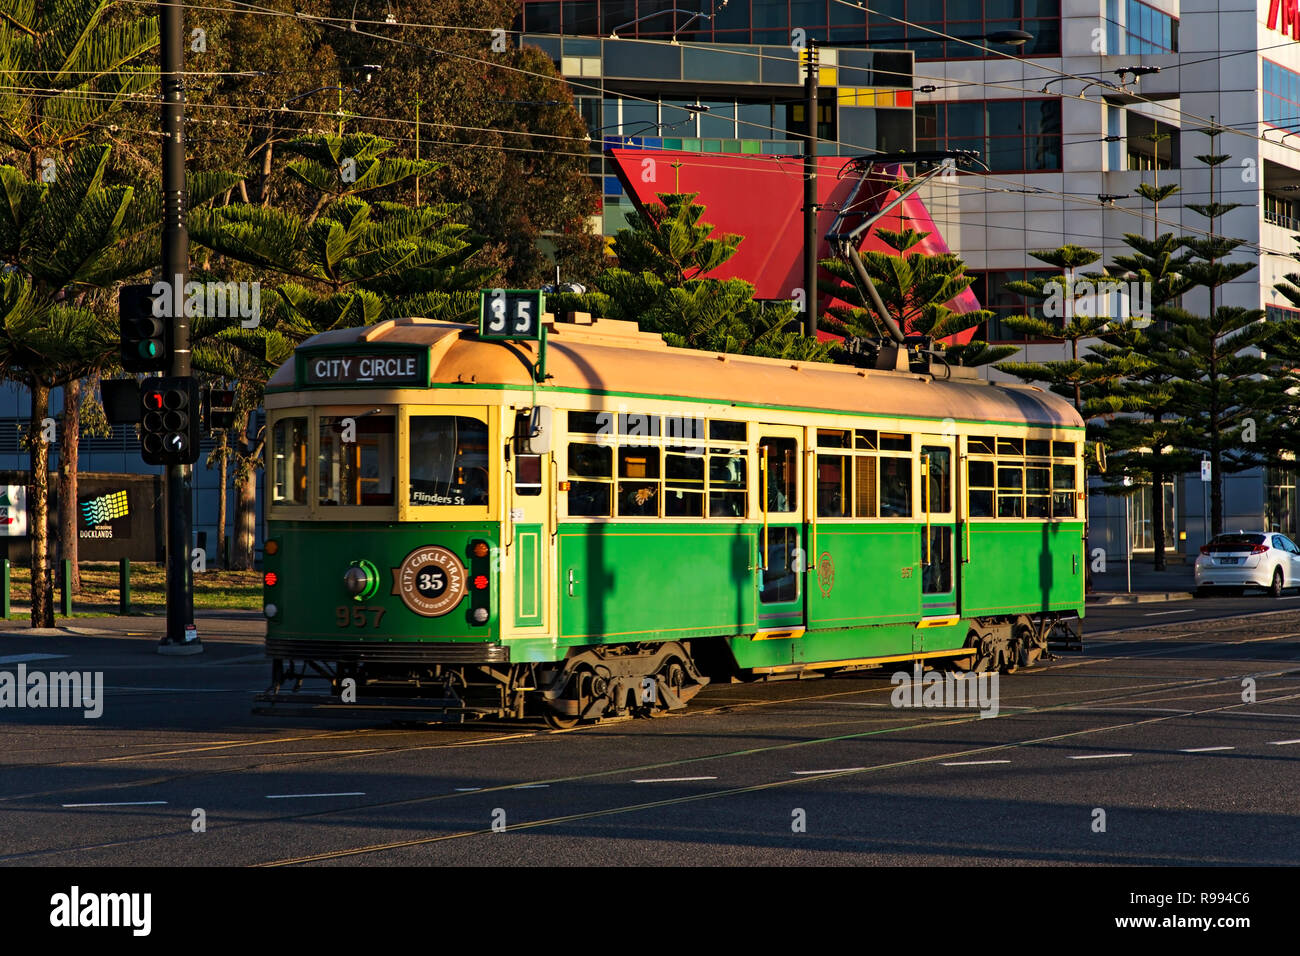 Un tram vintage Melbourne se déplace le long de l'Esplanade du port de Melbourne, Victoria Australie Docklands Melbourne.7 peut être vu dans l'arrière-plan. Banque D'Images